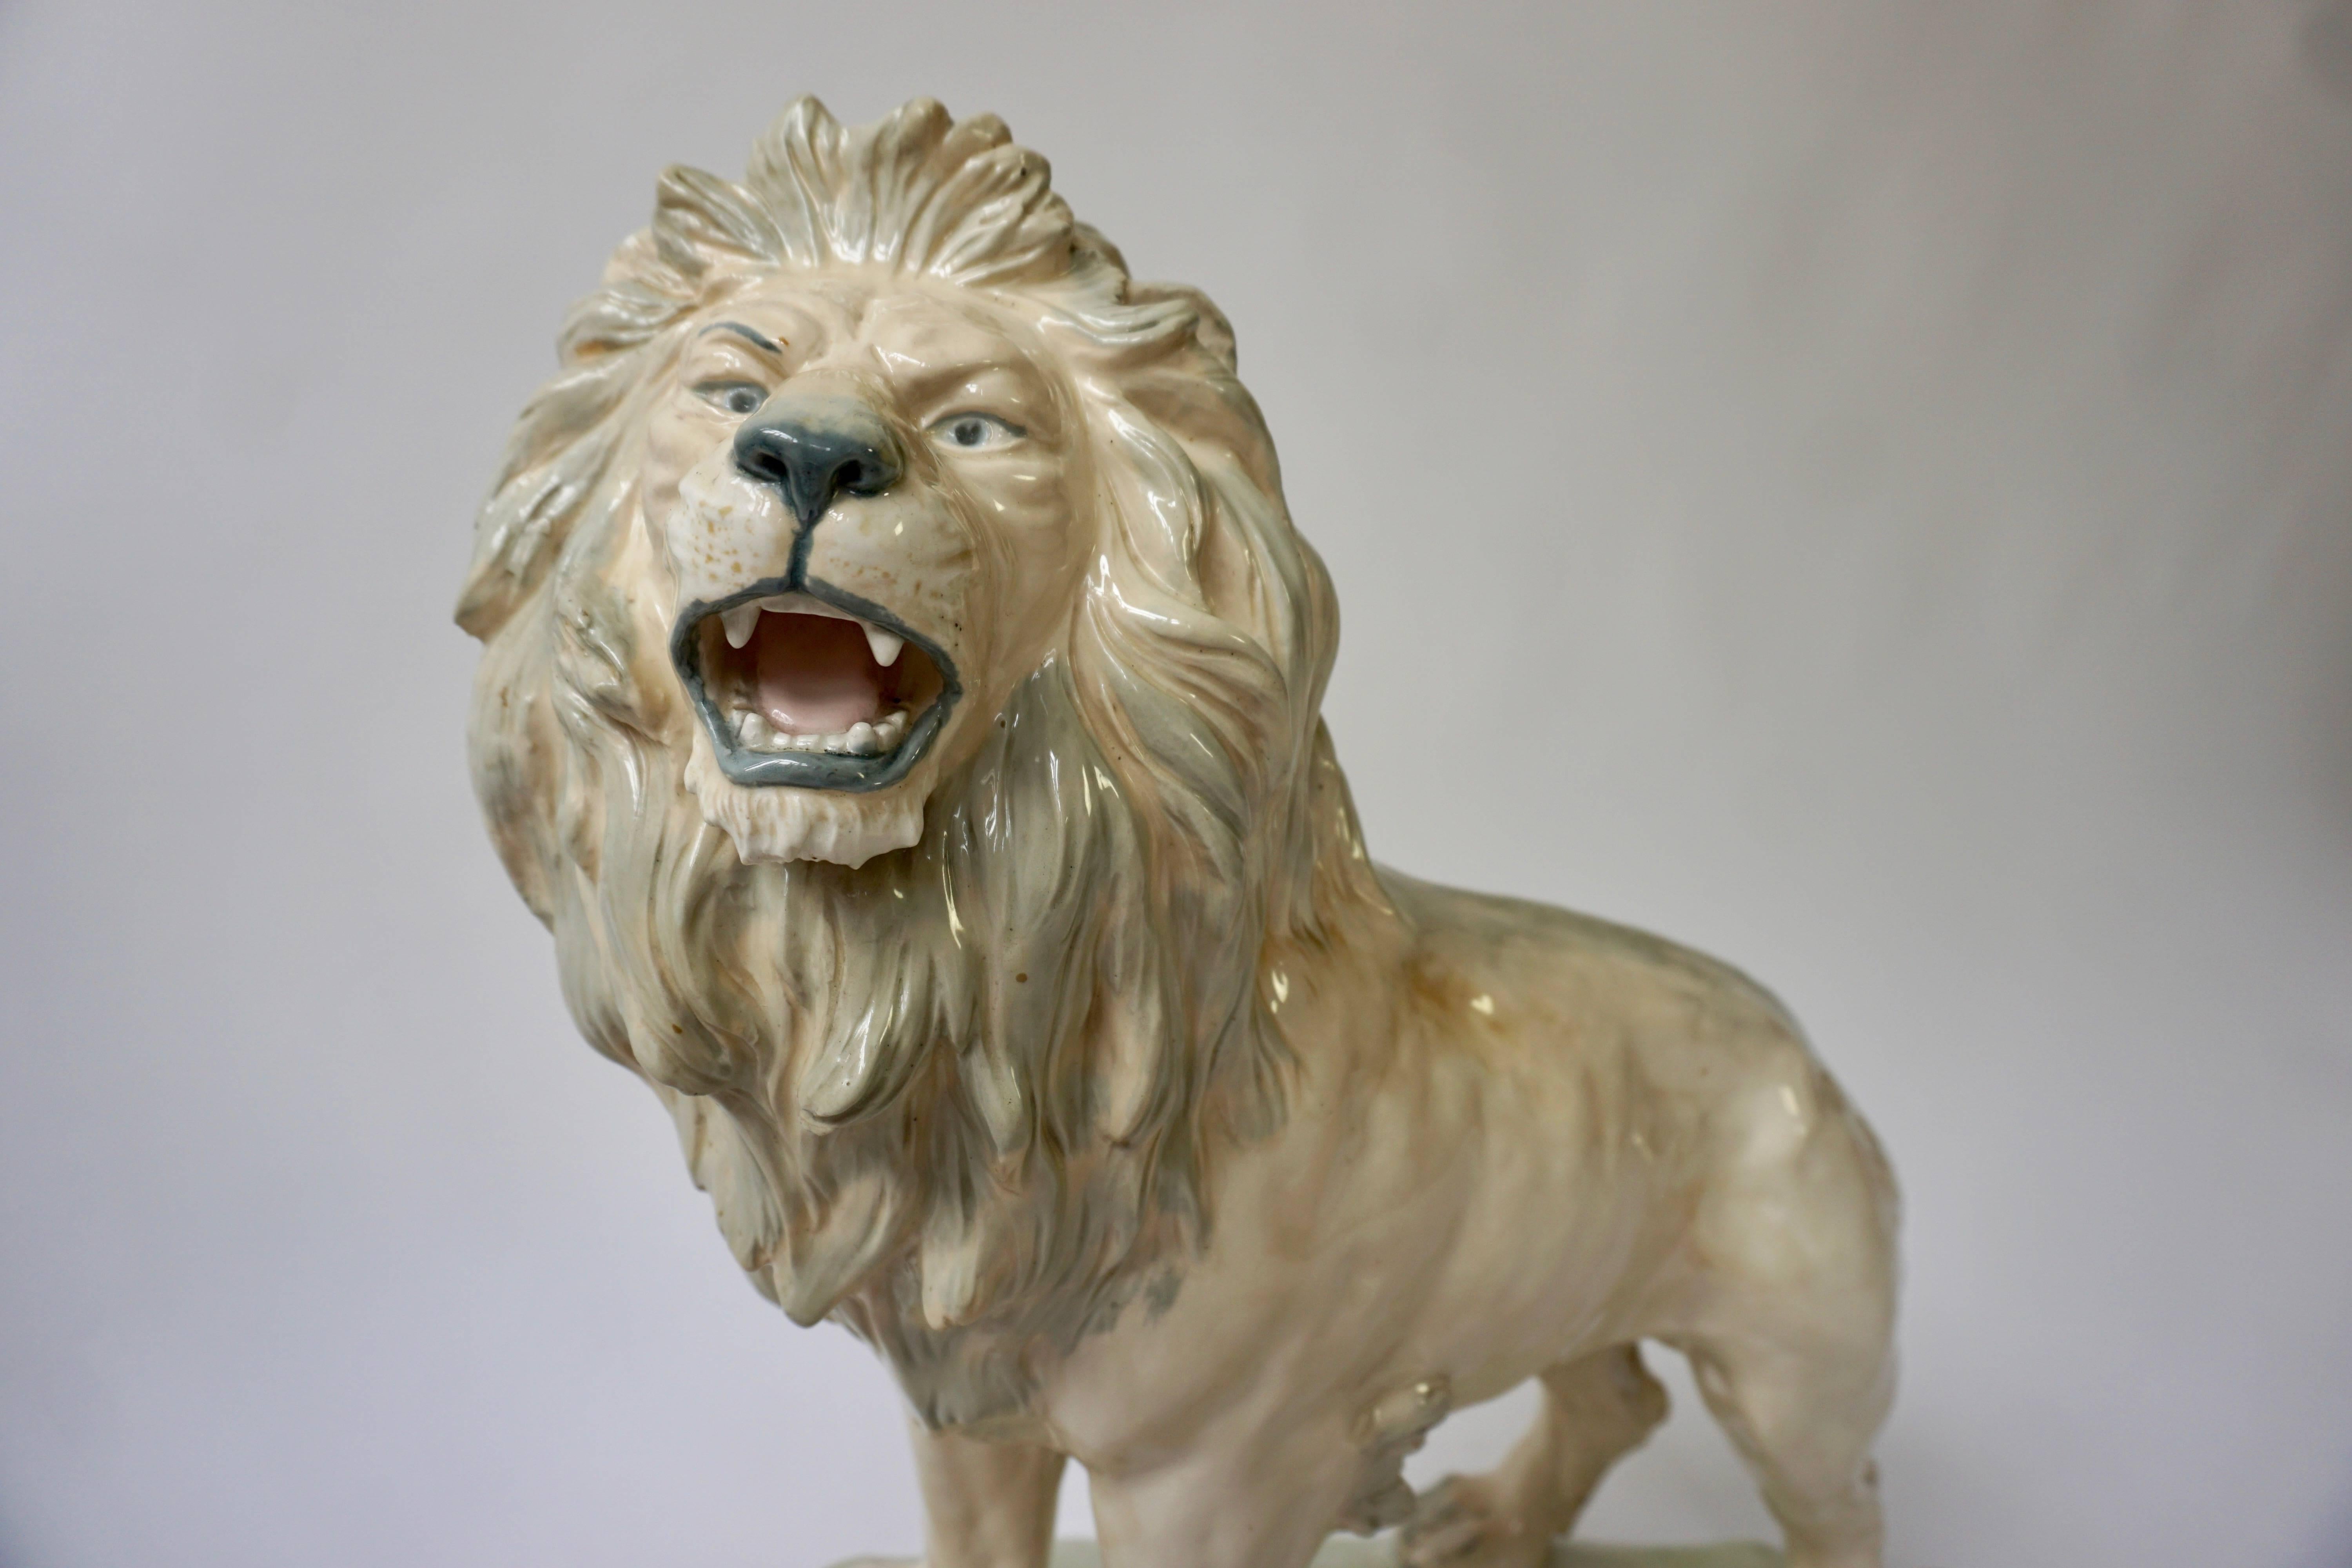 Cette sculpture de lion avec ses belles crinières et son tonus musculaire est très bien et réaliste et grâce à la merveilleuse patine, elle se rapproche également des vraies couleurs d'un lion. Ce roi de la jungle, majestueux, puissant et bien